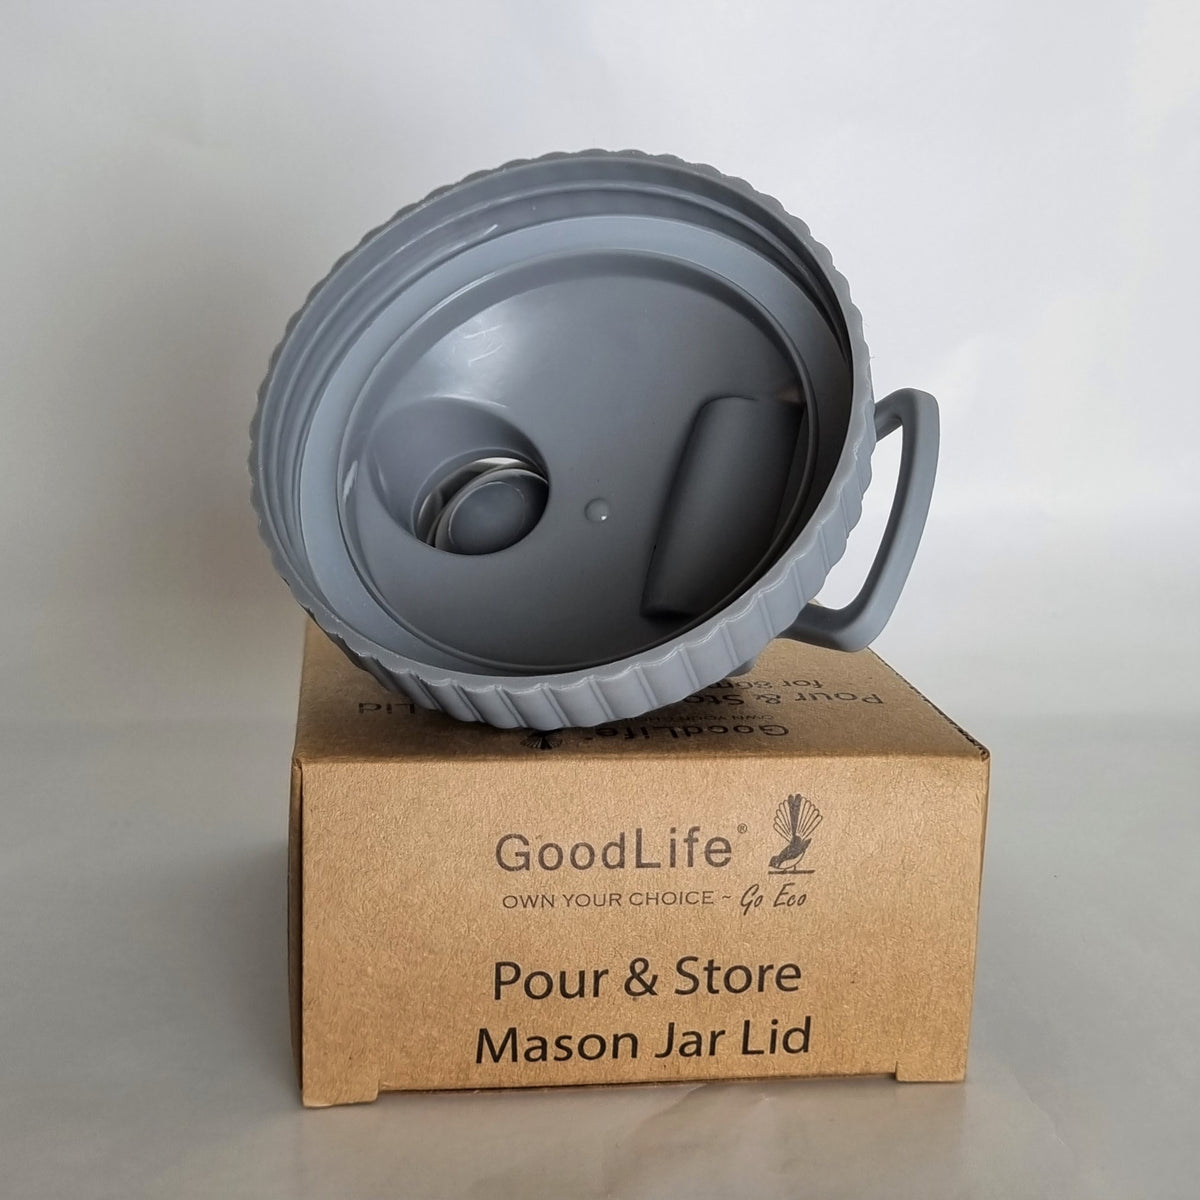 Goodlife - Pour &amp; Store Mason Jar Lid - 1 lid